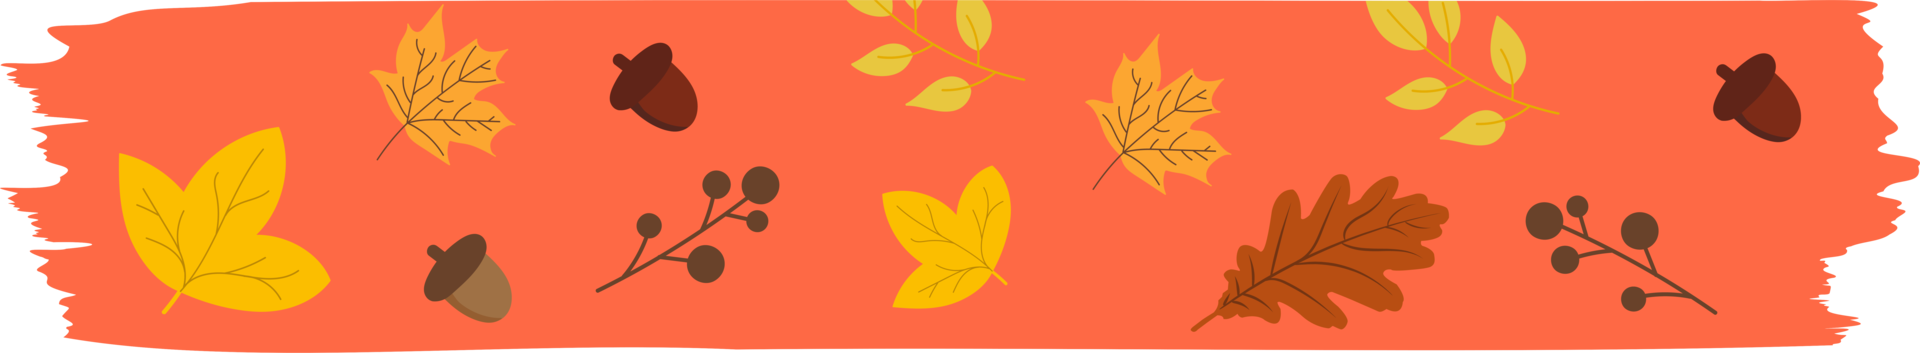 washi tape outono sazonal com folhas caindo, símbolos de elementos florais png